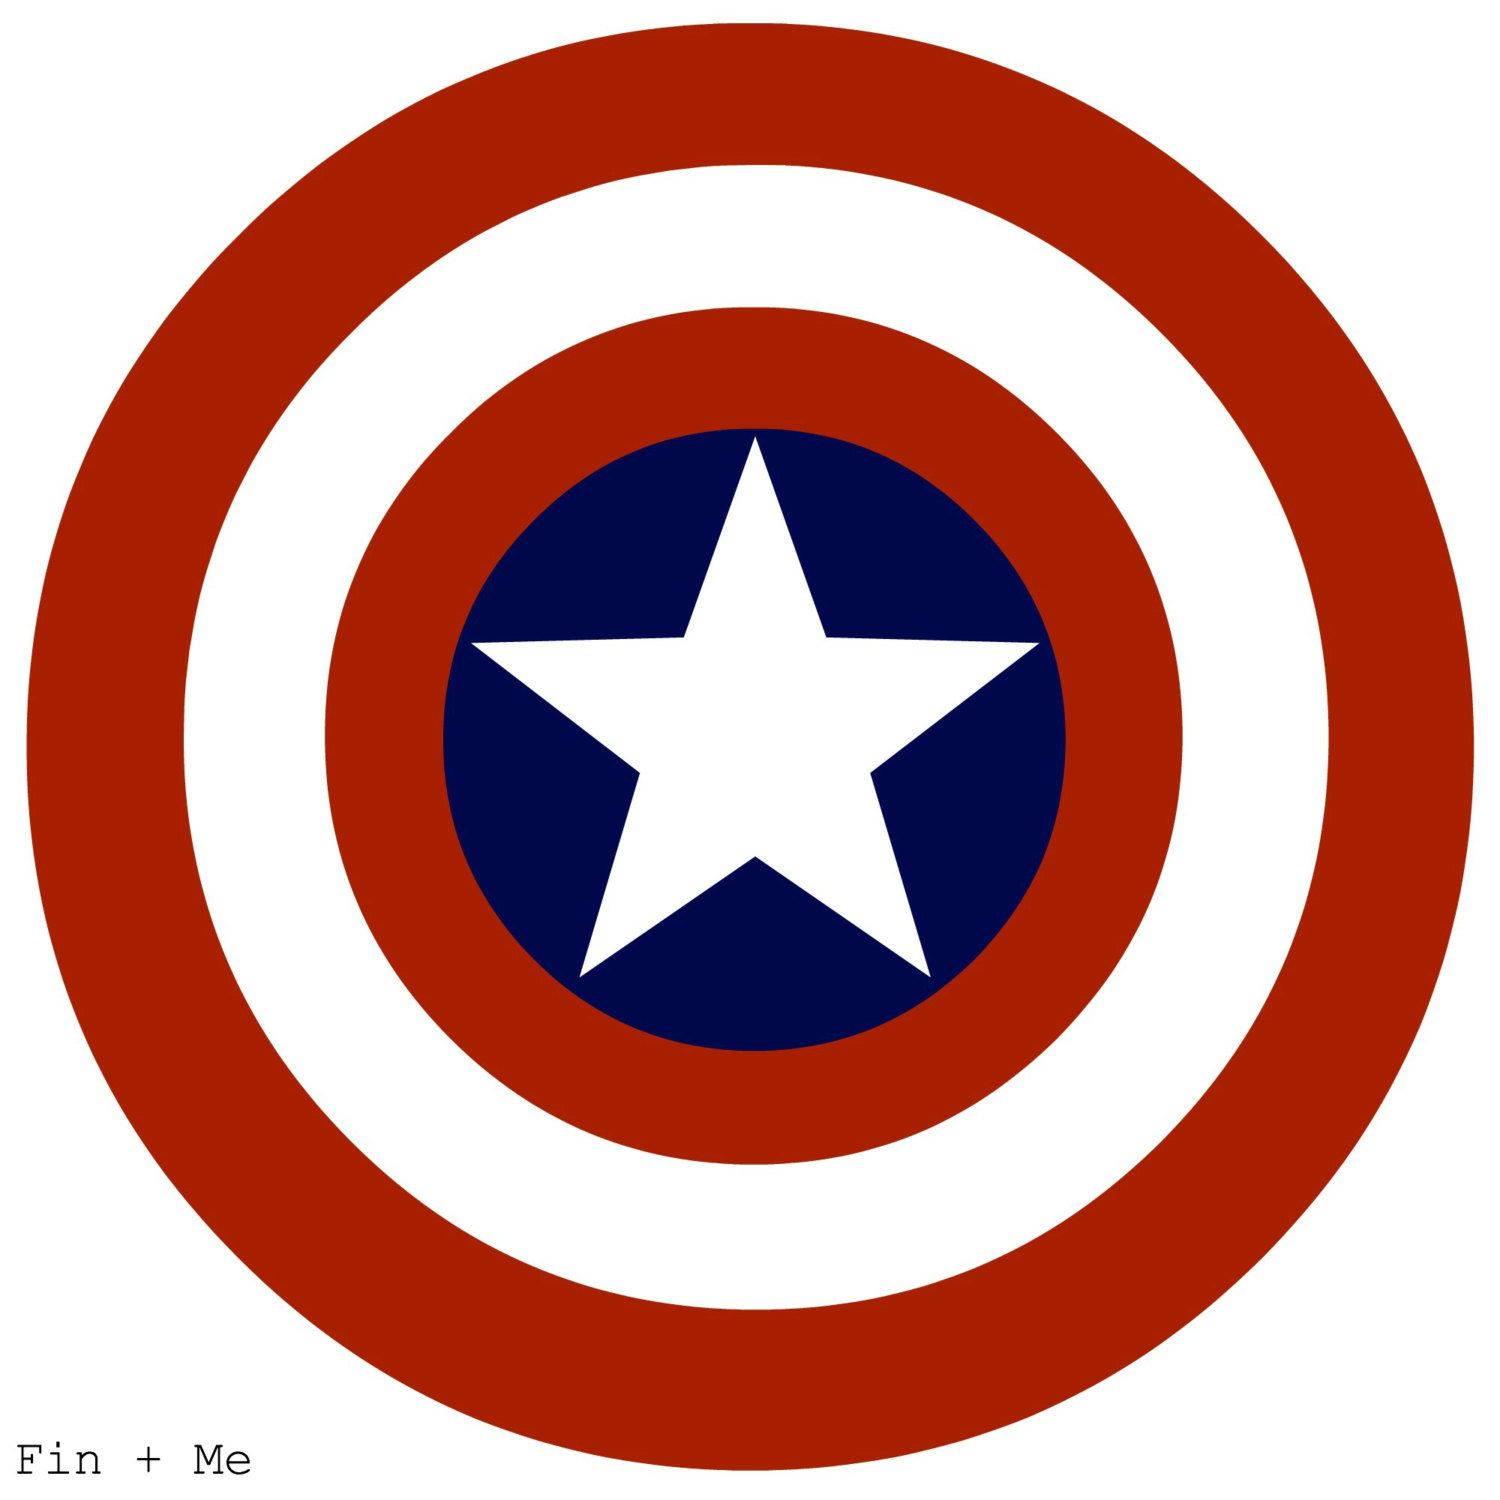 Captain America Shield Print 8x10 Or 8x8 zoom Captain 